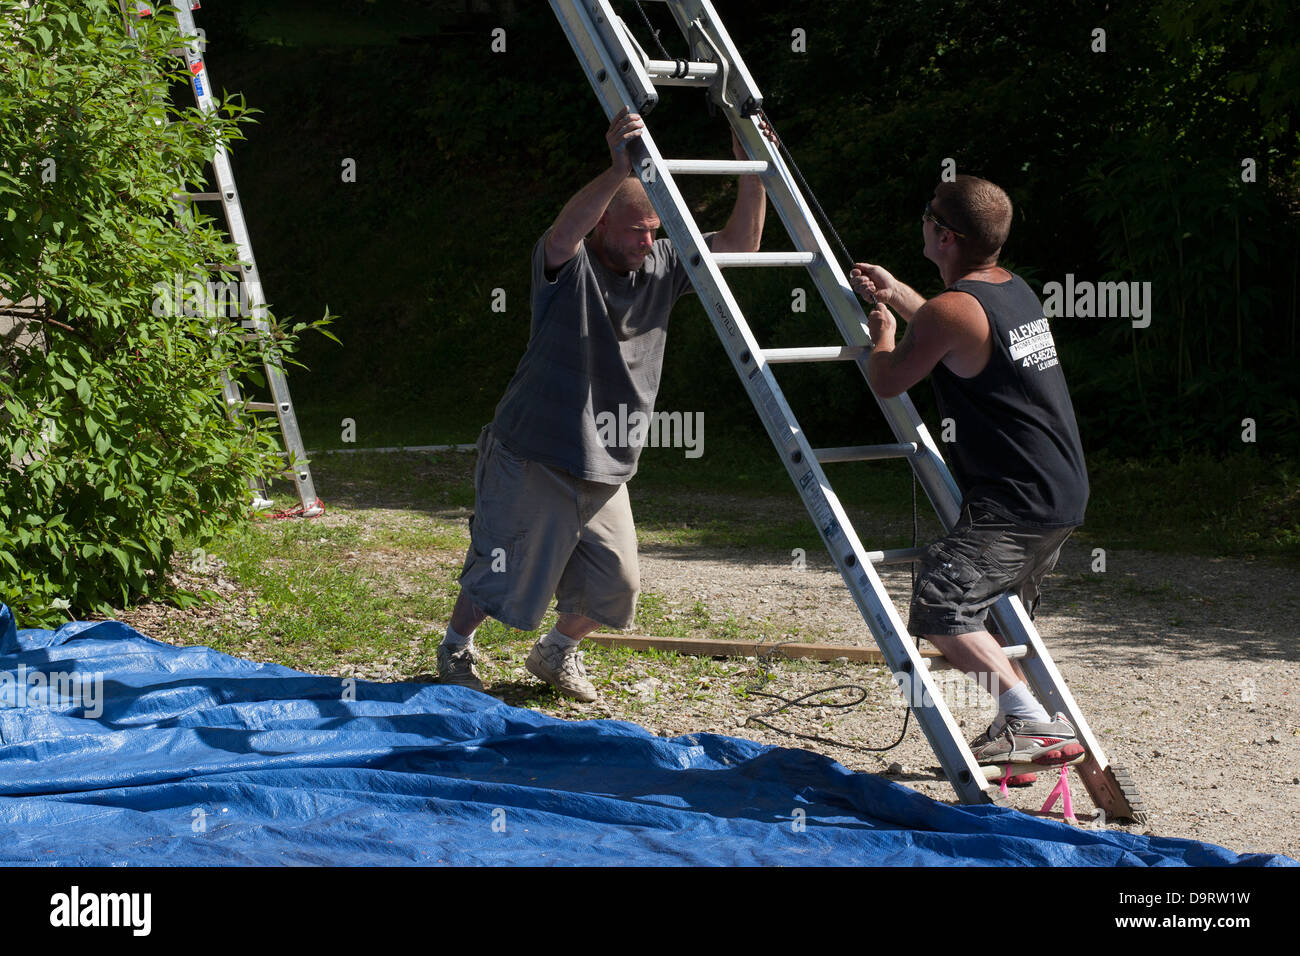 Su un pomeriggio d'estate, due uomini pulizia dopo un lavoro di verniciatura. Essi si stanno muovendo la loro estensione scaletta prima di lasciare il posto di lavoro. Foto Stock